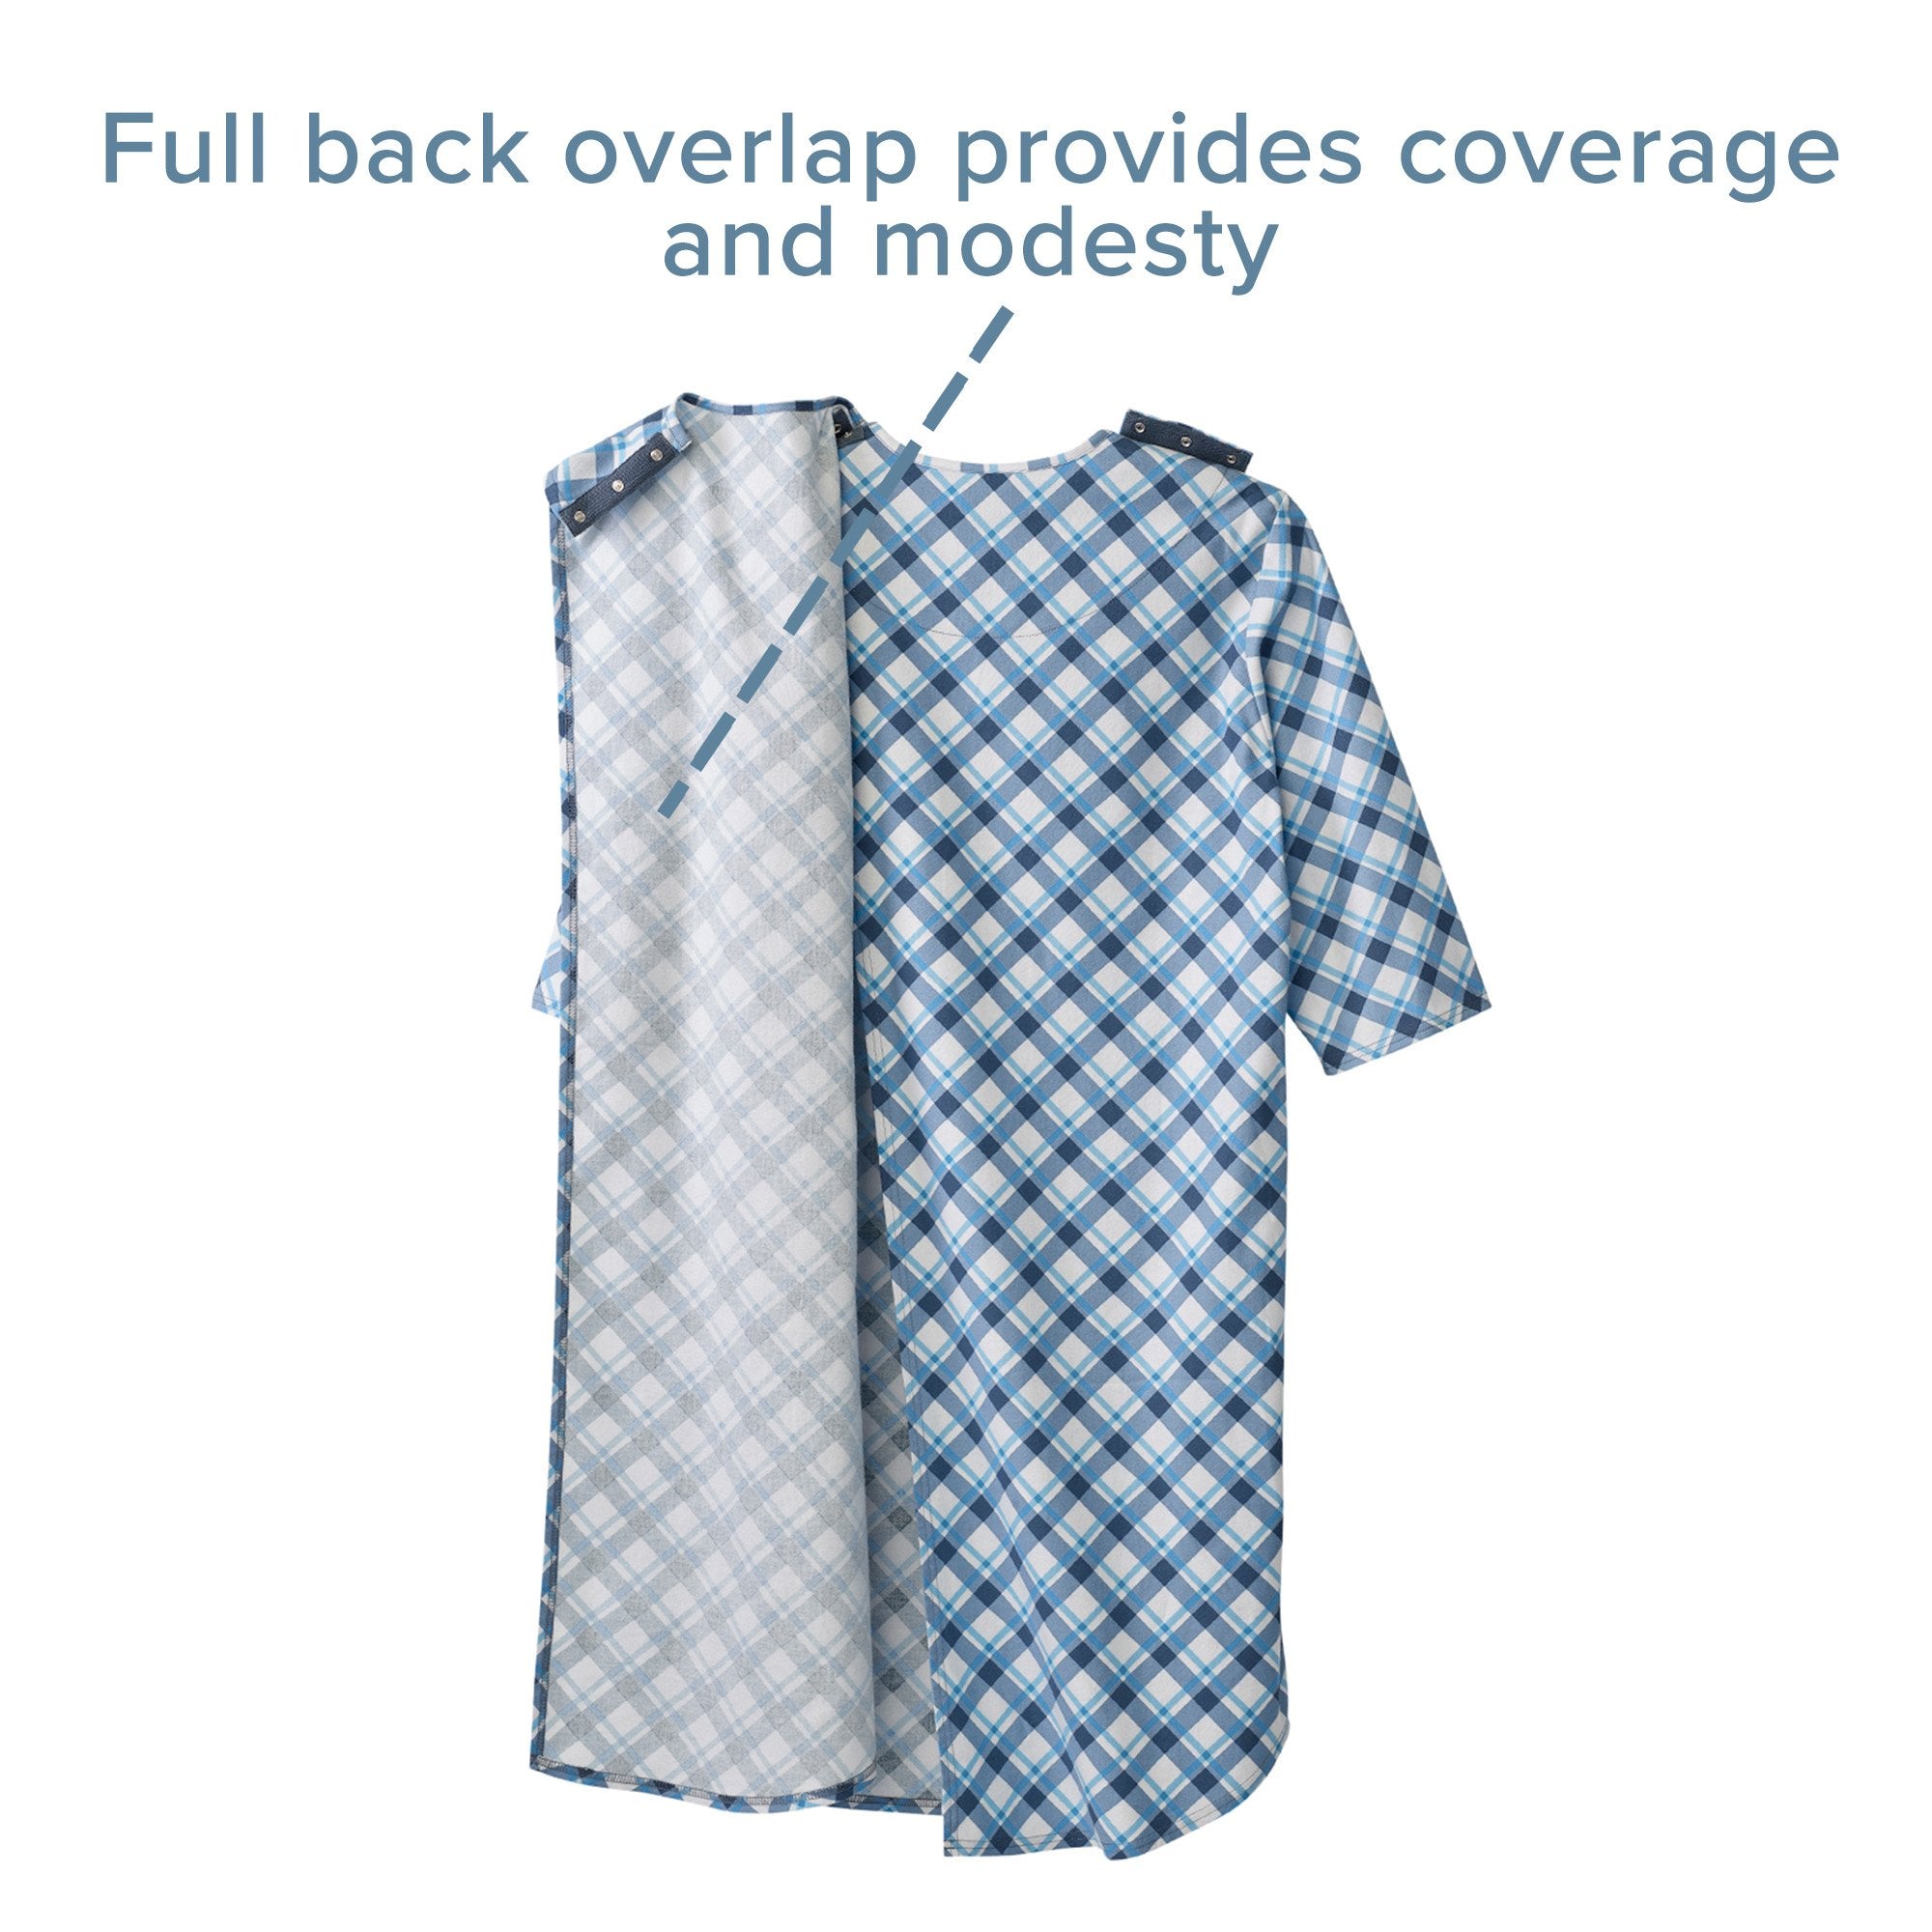 Silverts® Shoulder Snap Patient Exam Gown, X-Large, Diagonal Blue Plaid (1 Unit)